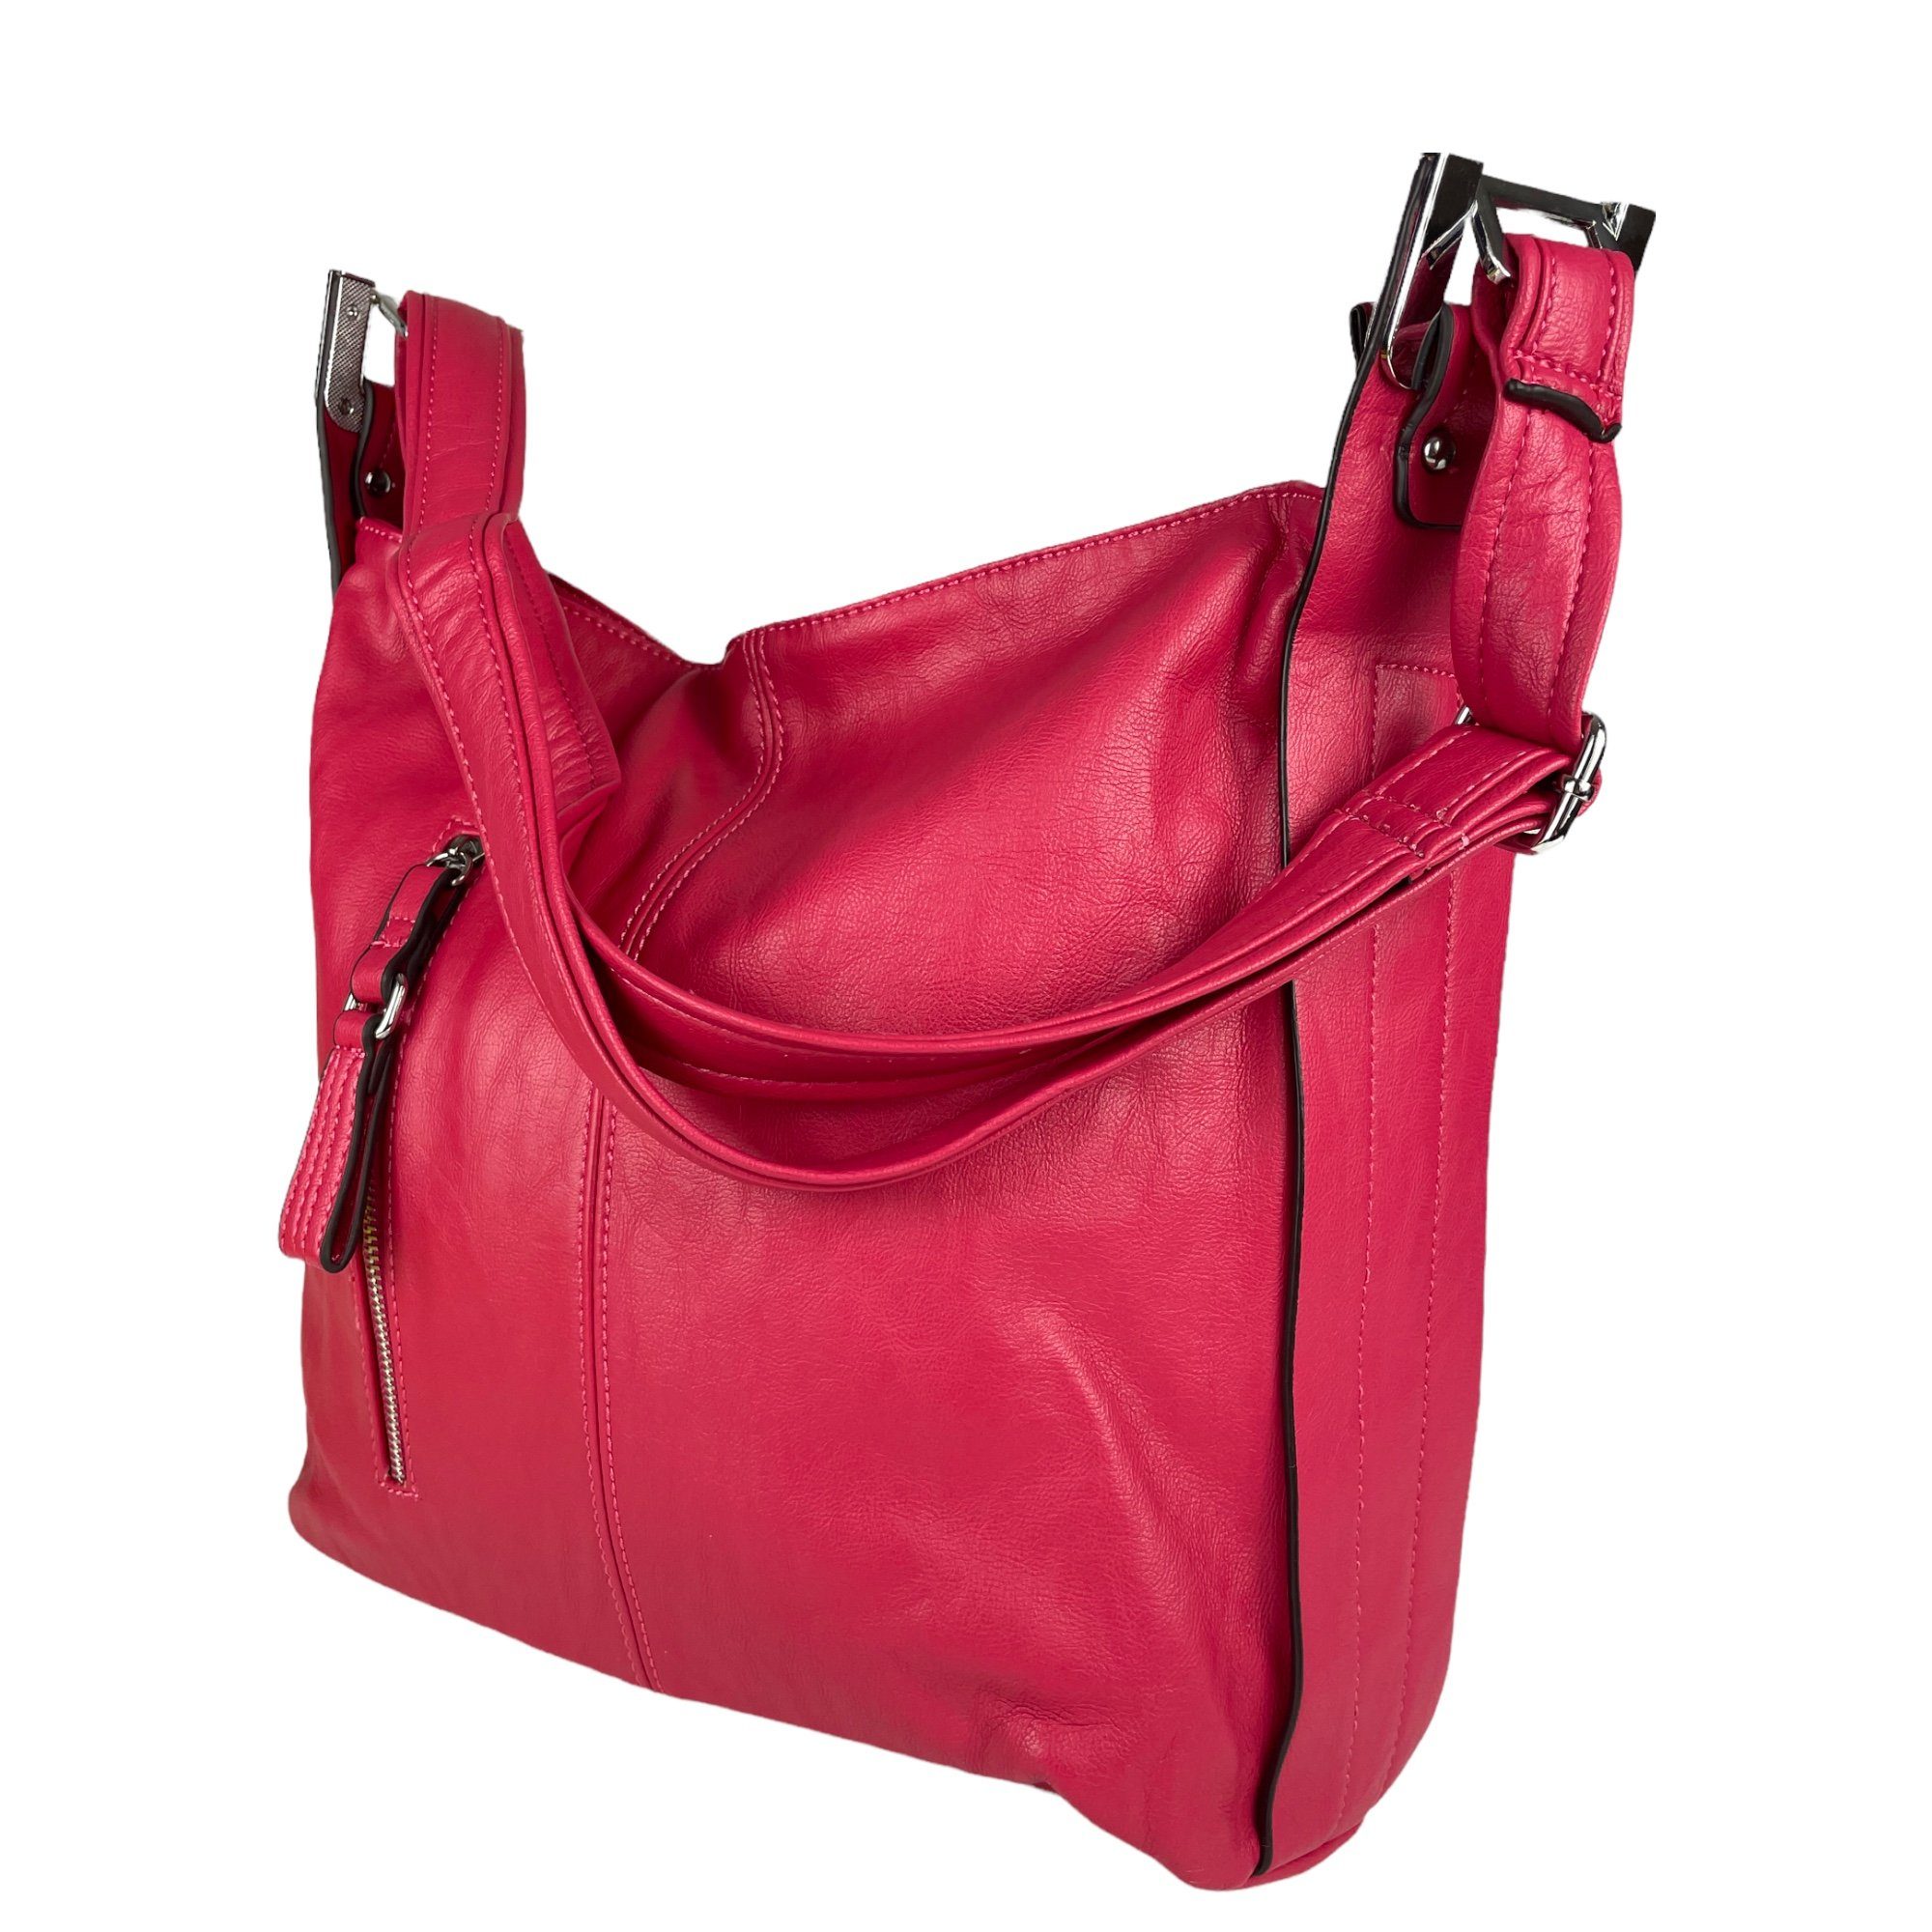 Taschen4life Schultertasche Damen Shopper 7067 Umhängetasche, einfarbig, schlichte moderne pink, Trageriemen breiter Optik